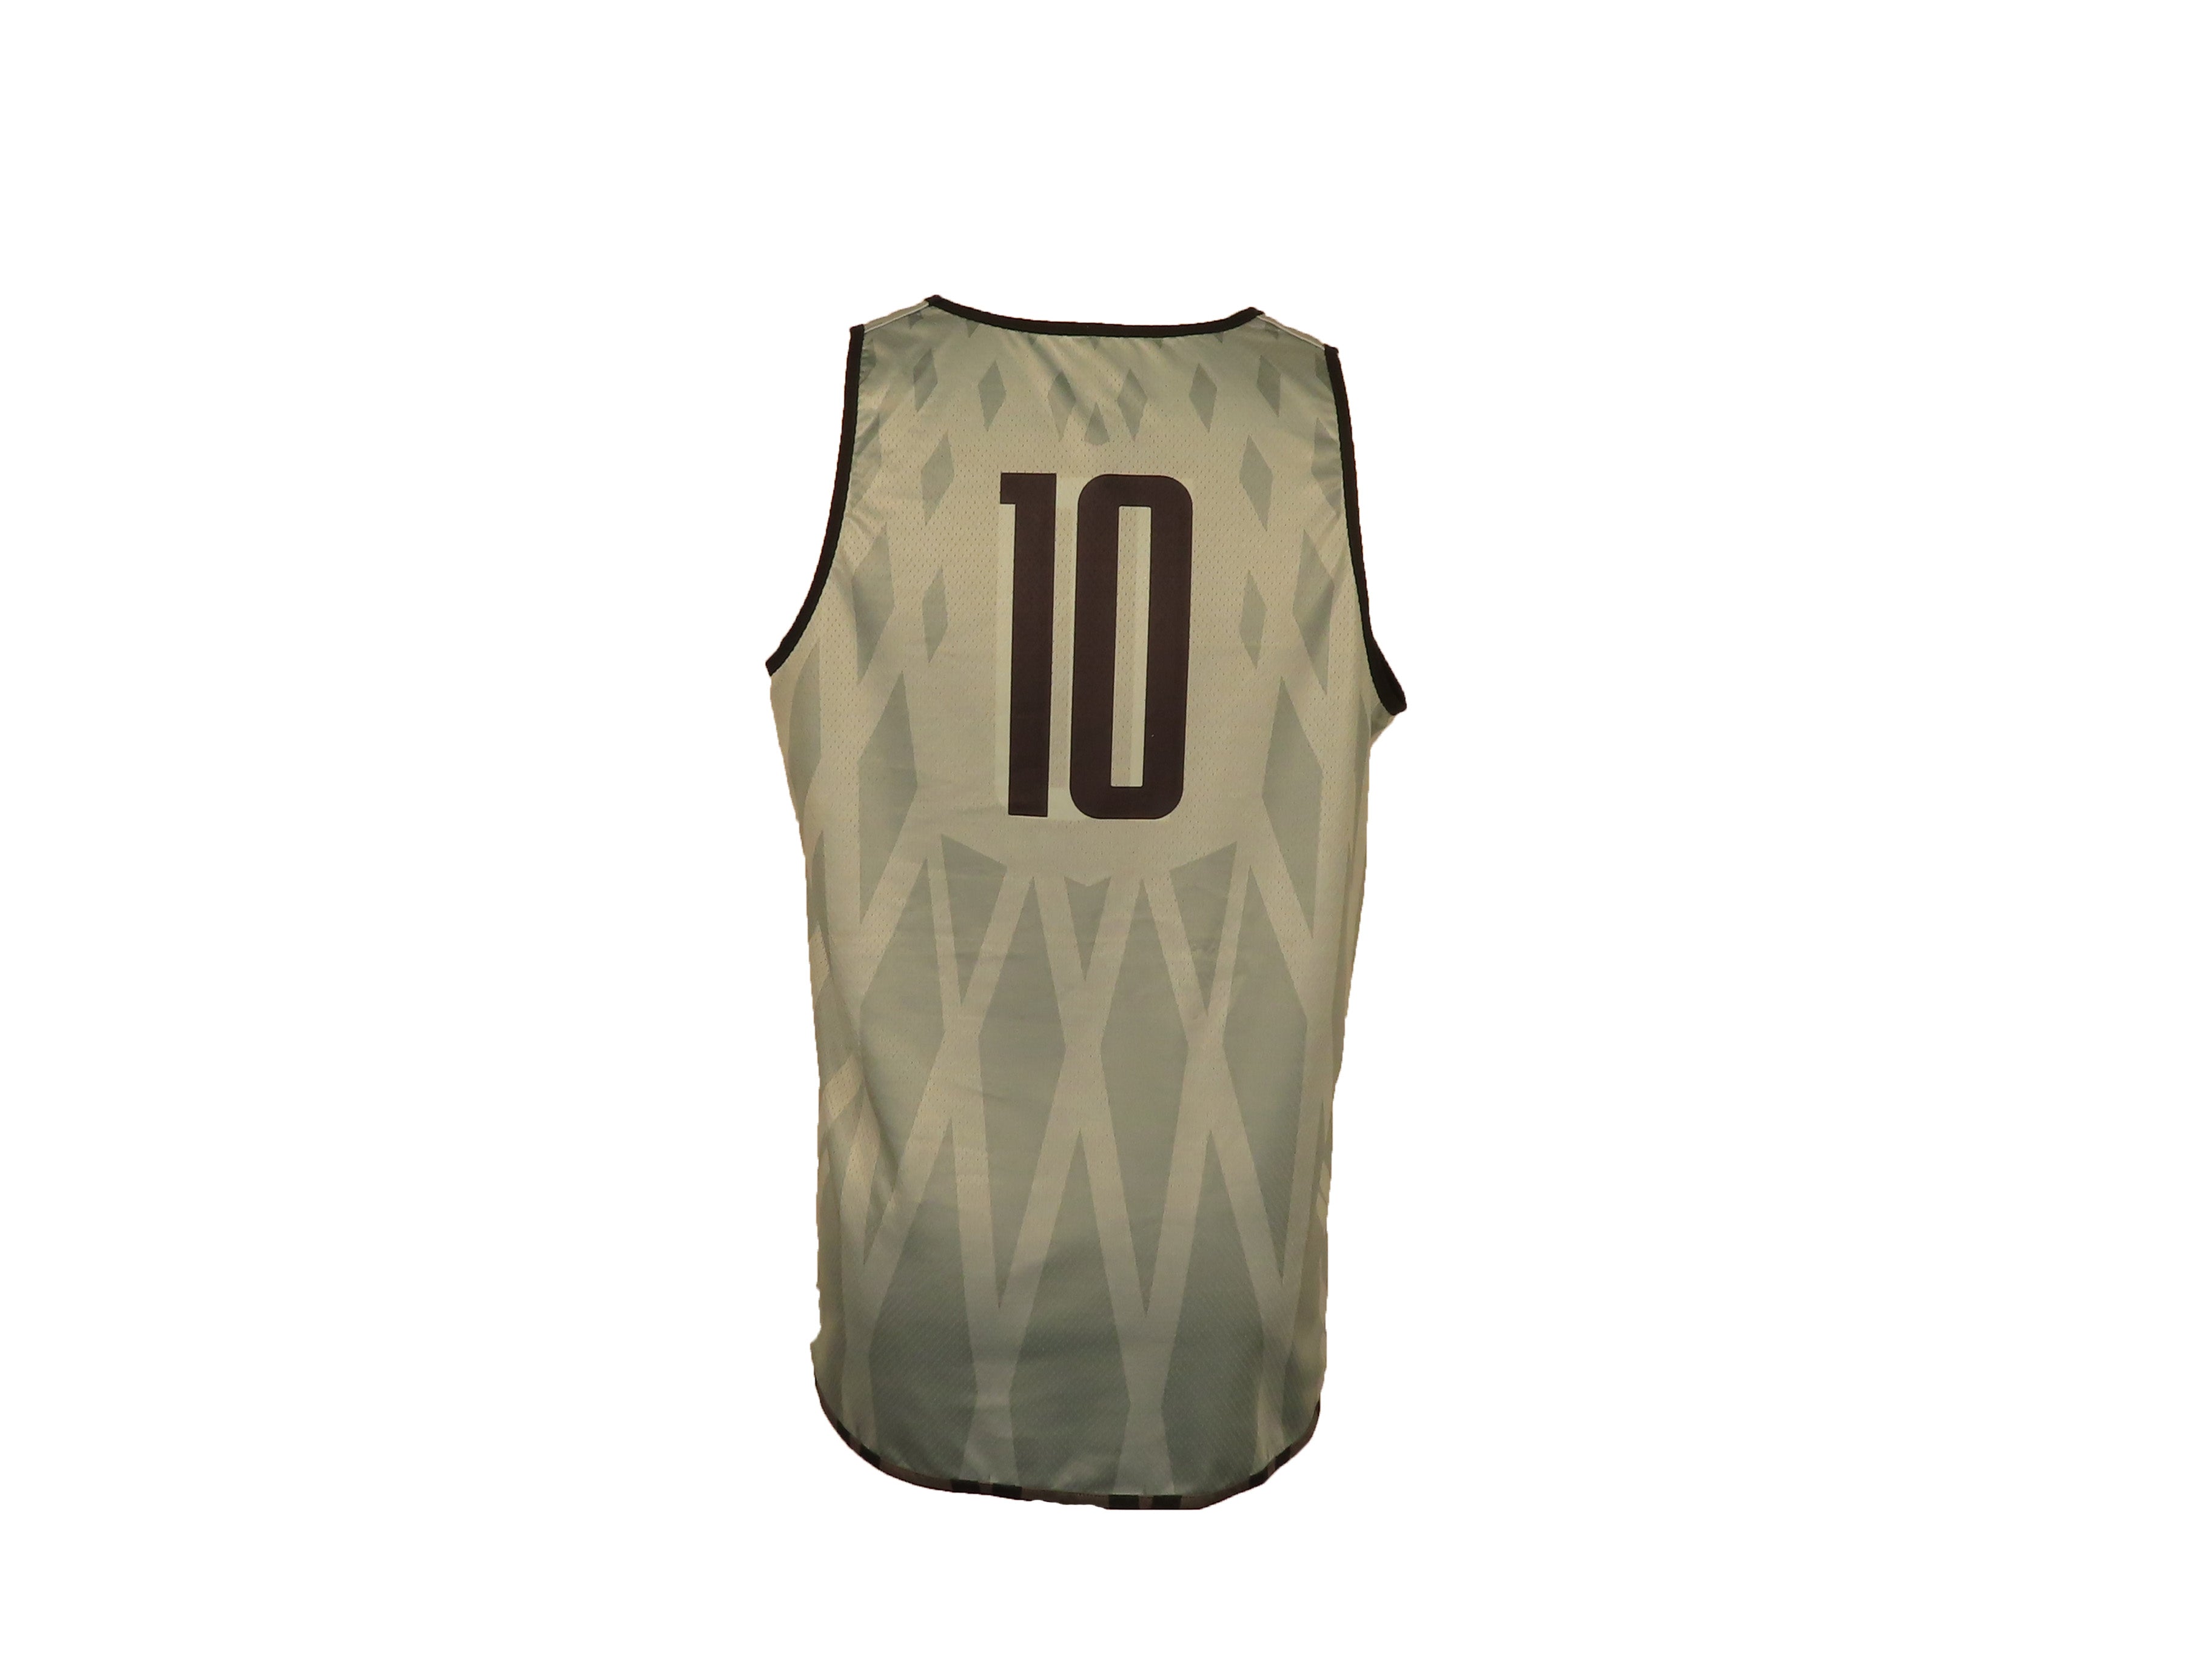 Nike Black & Gray Reversible Women's Basketball #10 Jersey Size XL